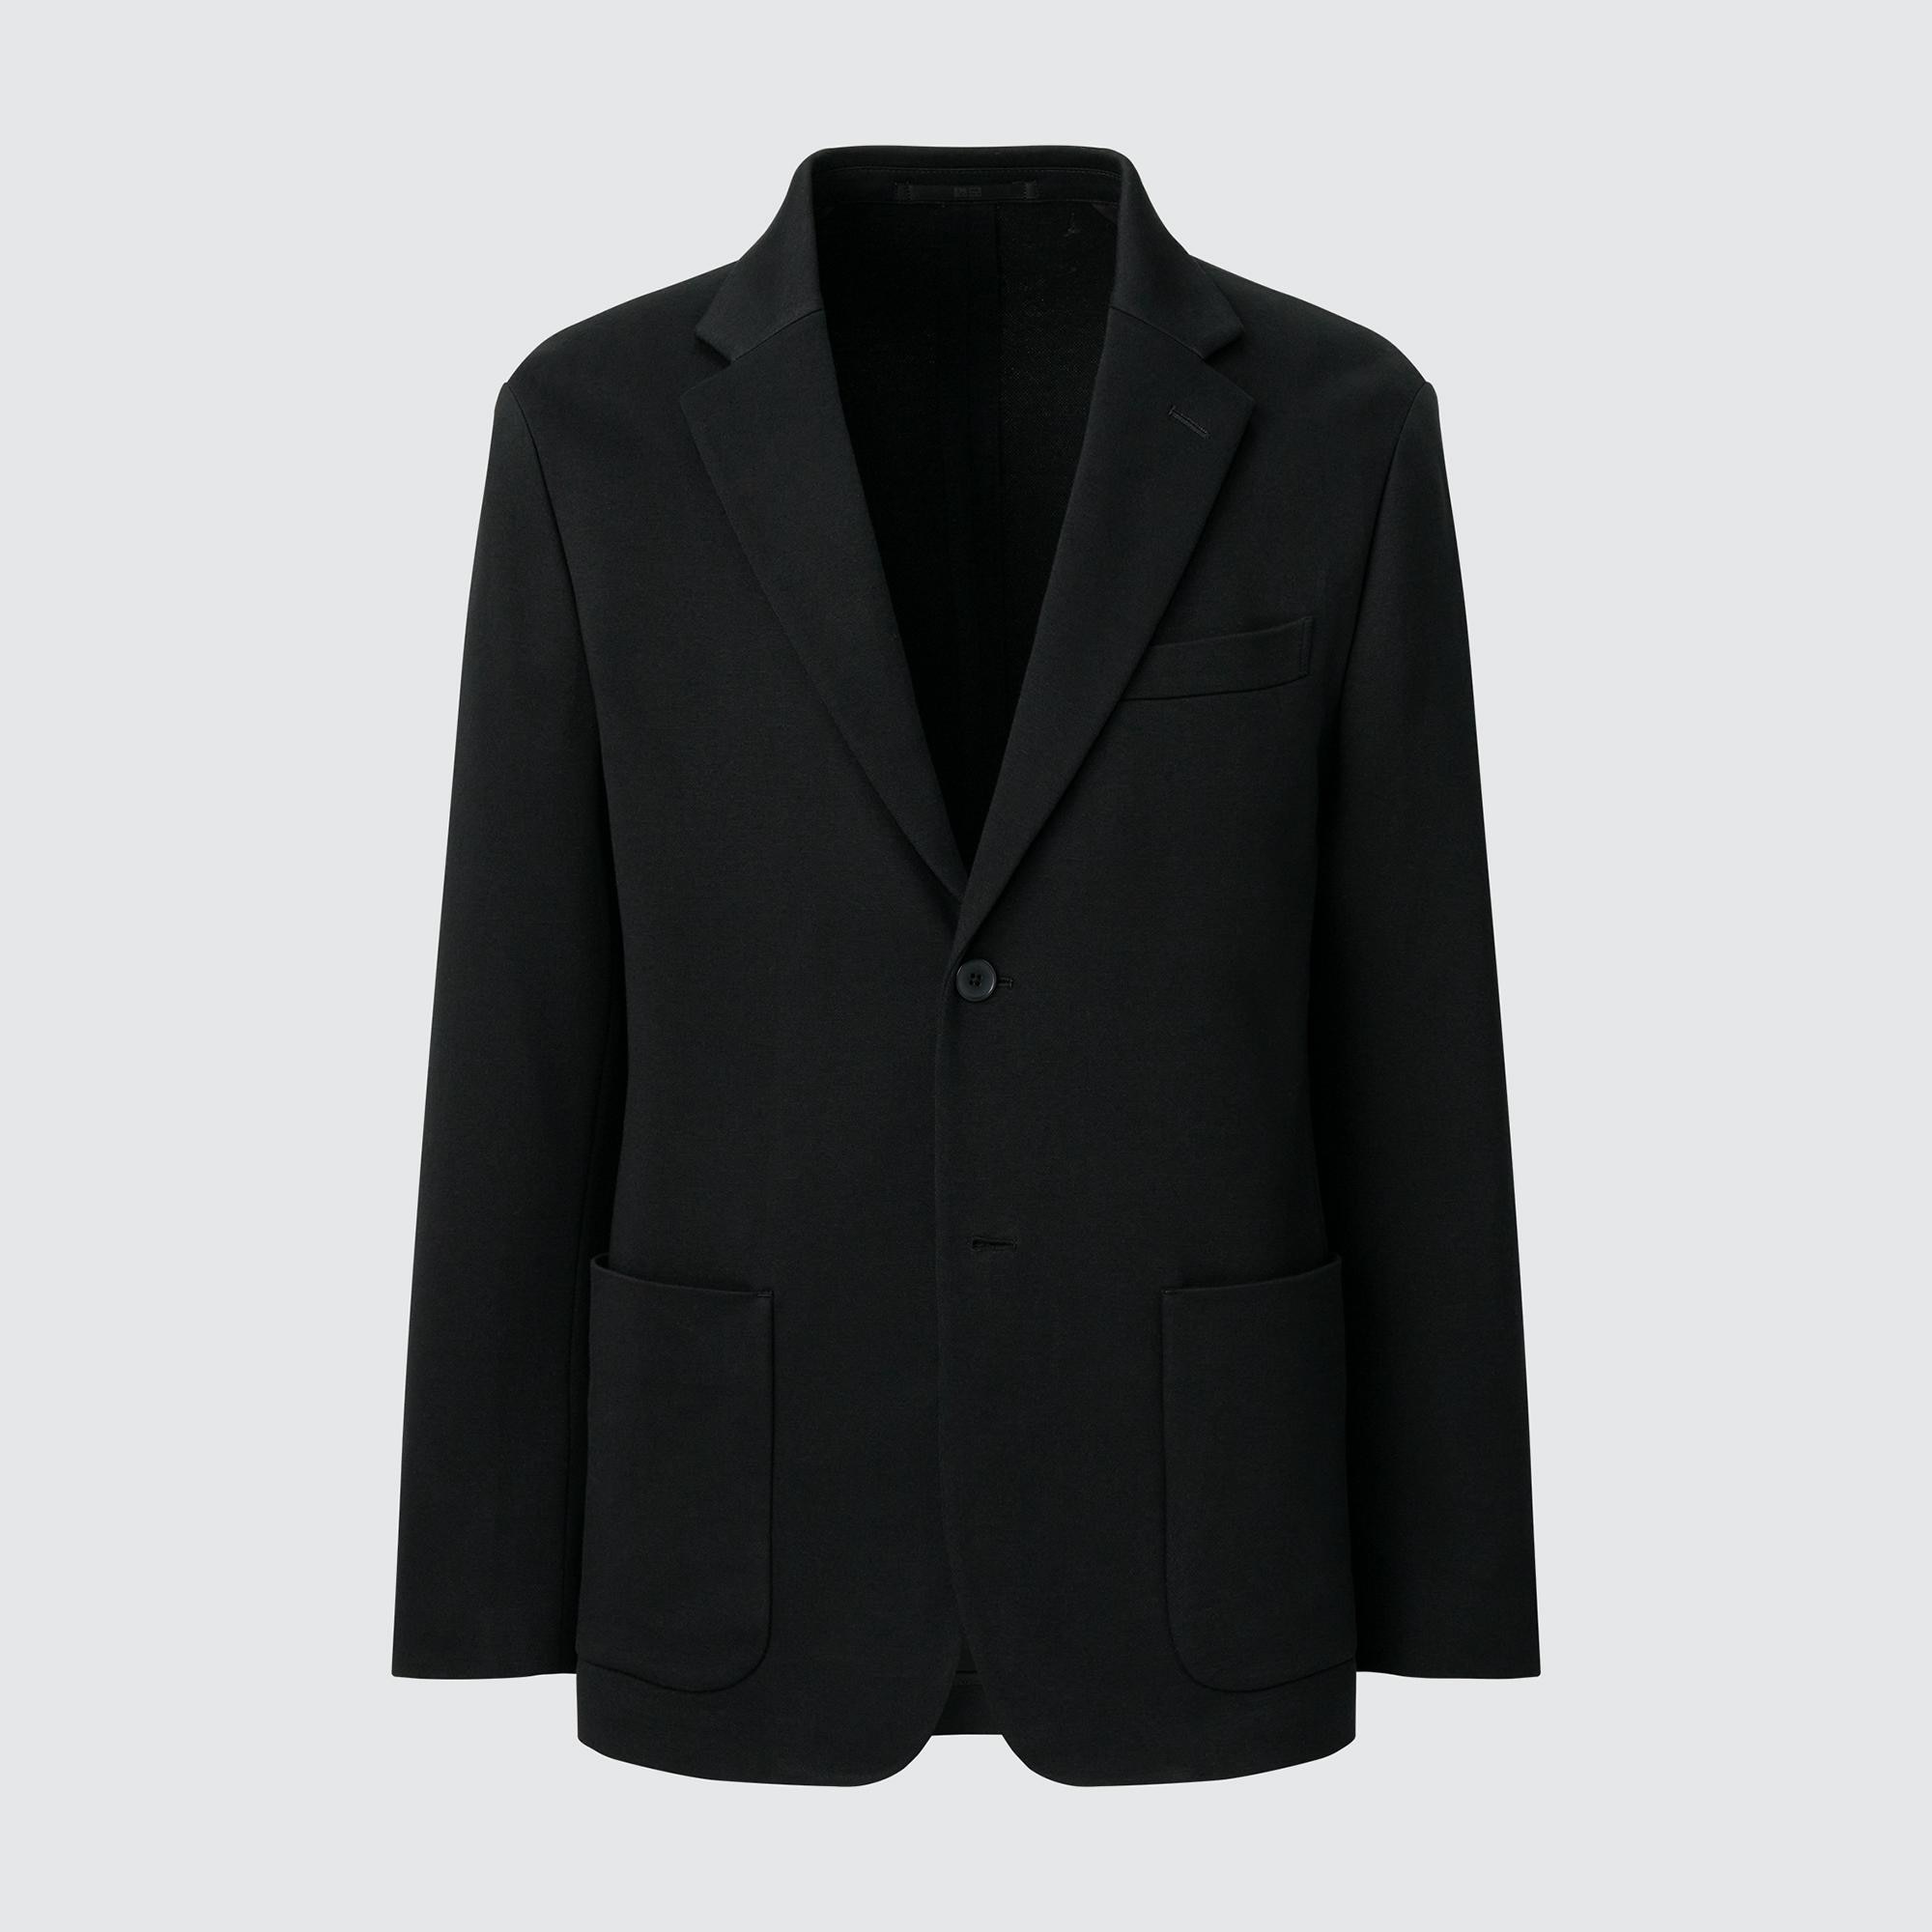 Куртка UNIQLO Comfort 2B с нагрудным карманом, черный куртка uniqlo comfort 2b на пуговицах темно серый